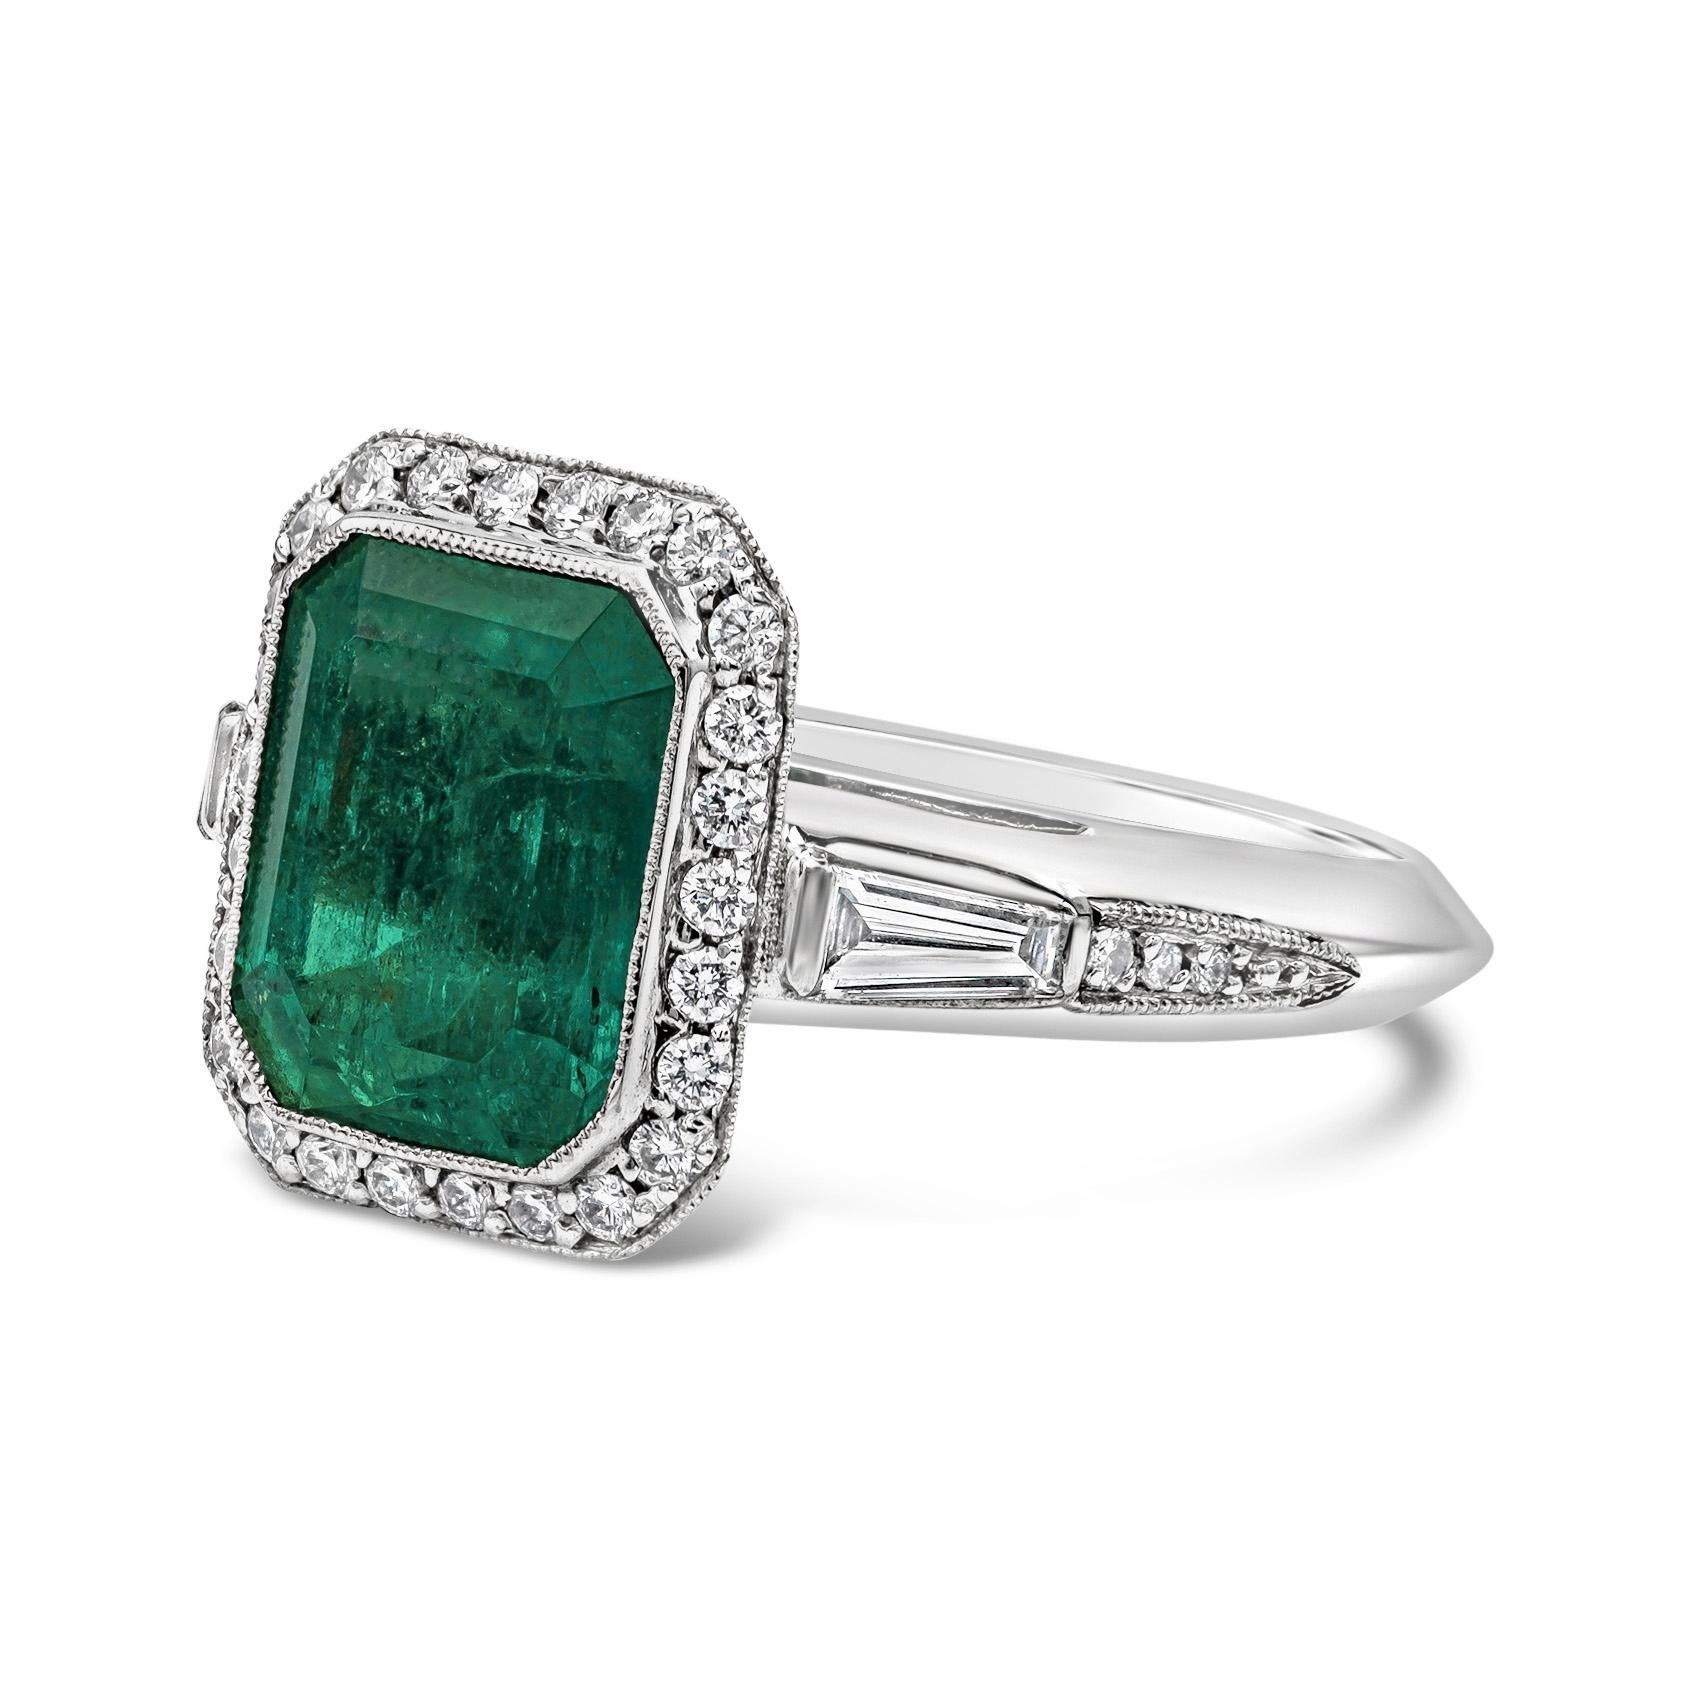 Ein atemberaubender Edelstein Verlobungsring Stil präsentiert einen Smaragd geschnitten grünen Smaragd Zentrum Stein mit einem Gesamtgewicht von 4,58 Karat. Umgeben von runden Brillanten in einem Halo-Design und akzentuiert mit weiteren Diamanten